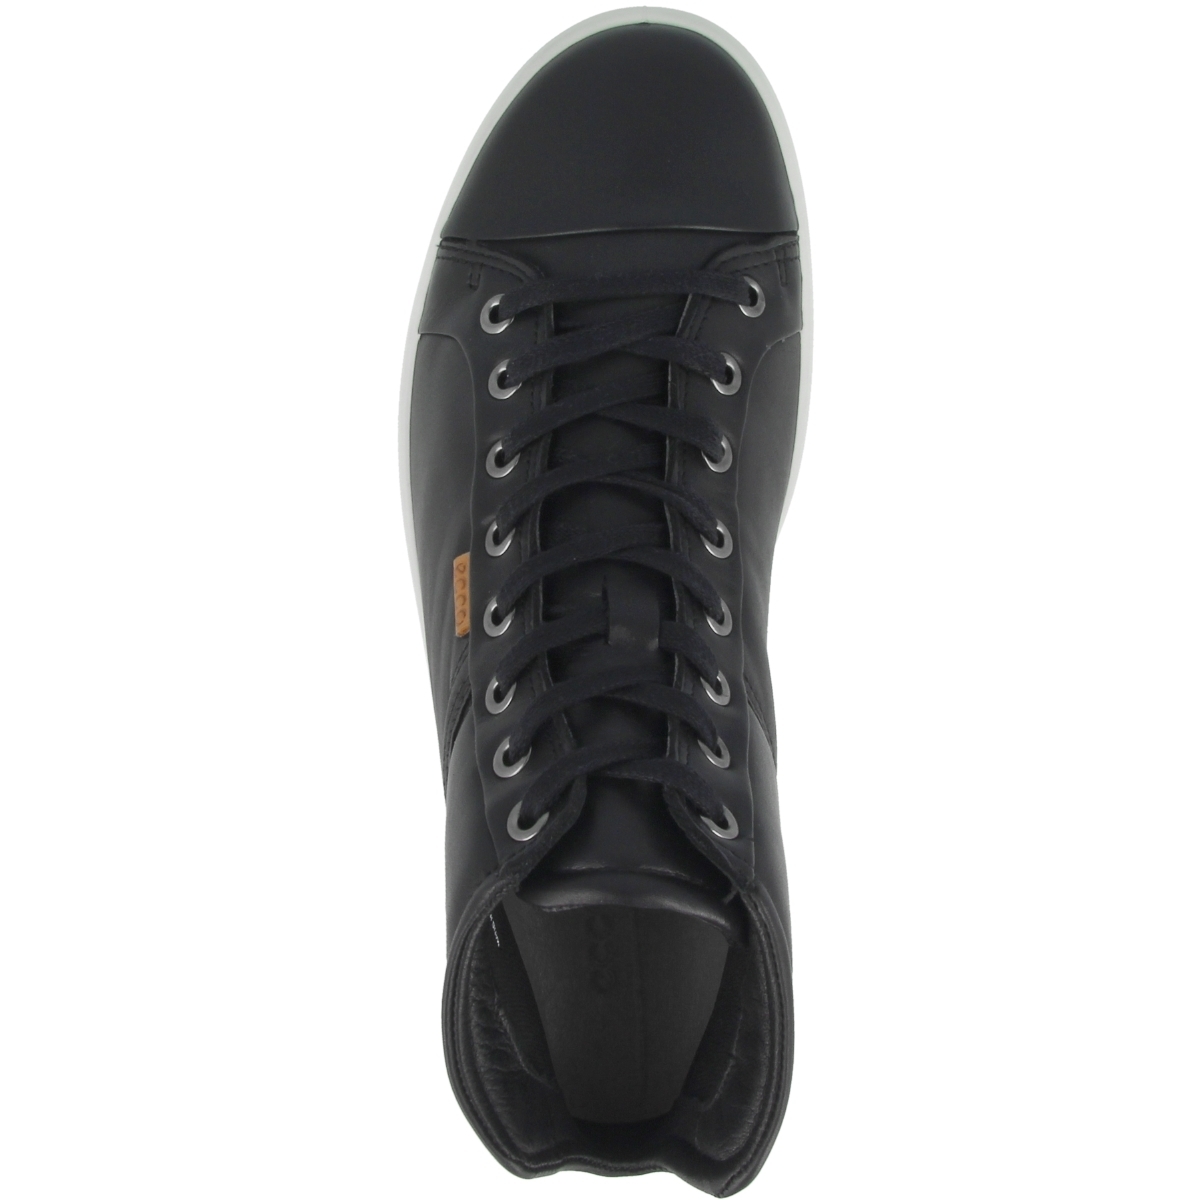 Ecco Soft 7 Mid Ladies Schuhe schwarz